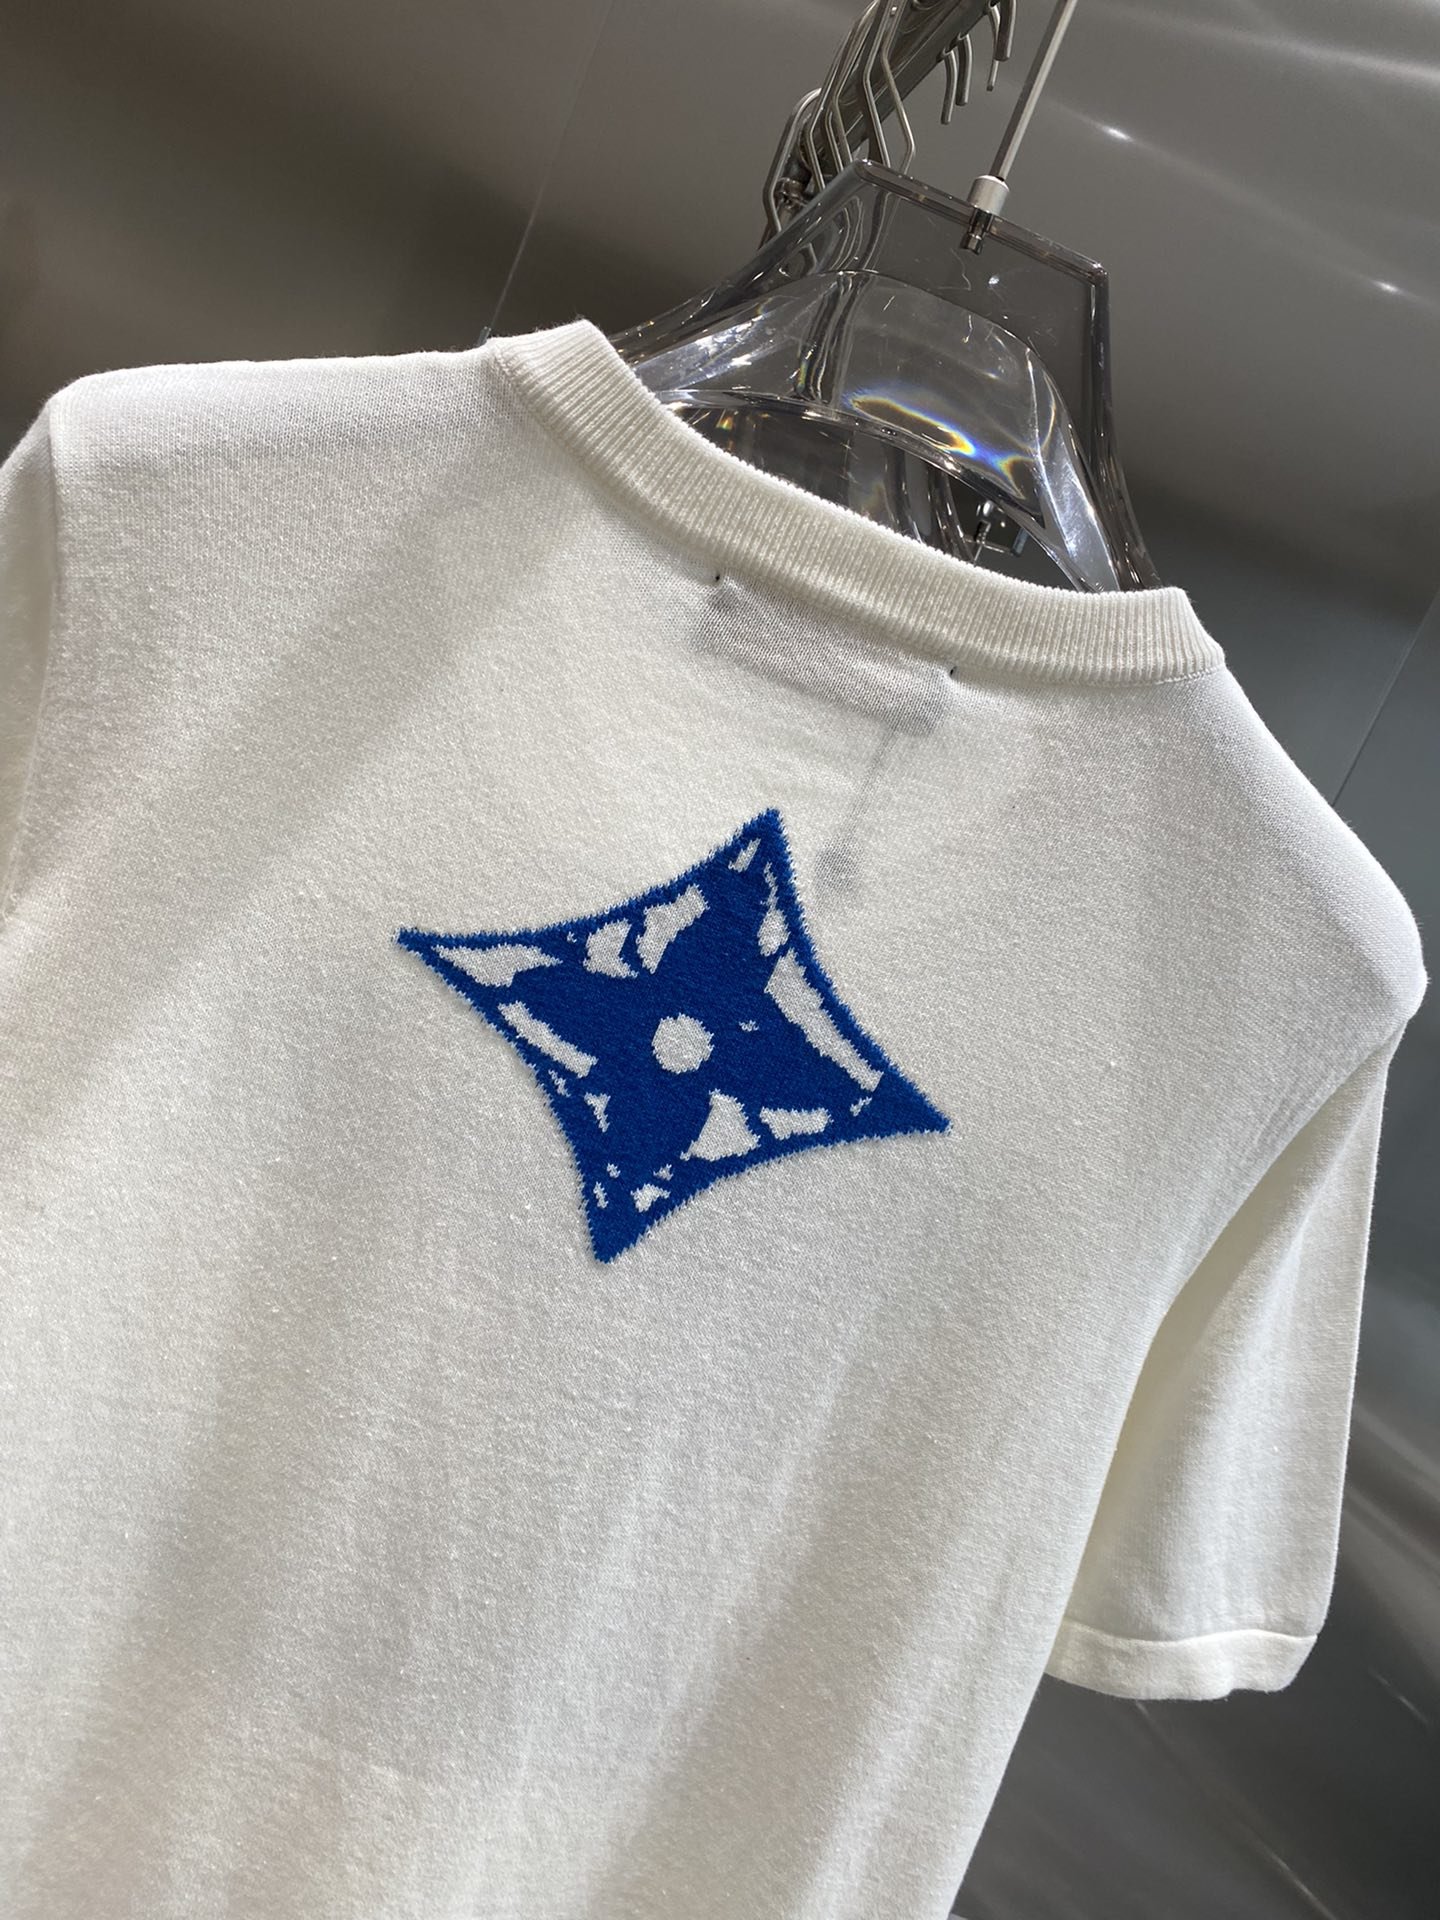 驴家24ss新款短袖棉质圆领上衣将路易威登及LV标志重新演绎为赛车标志并融合于嵌花针织面料以对比鲜明的颜